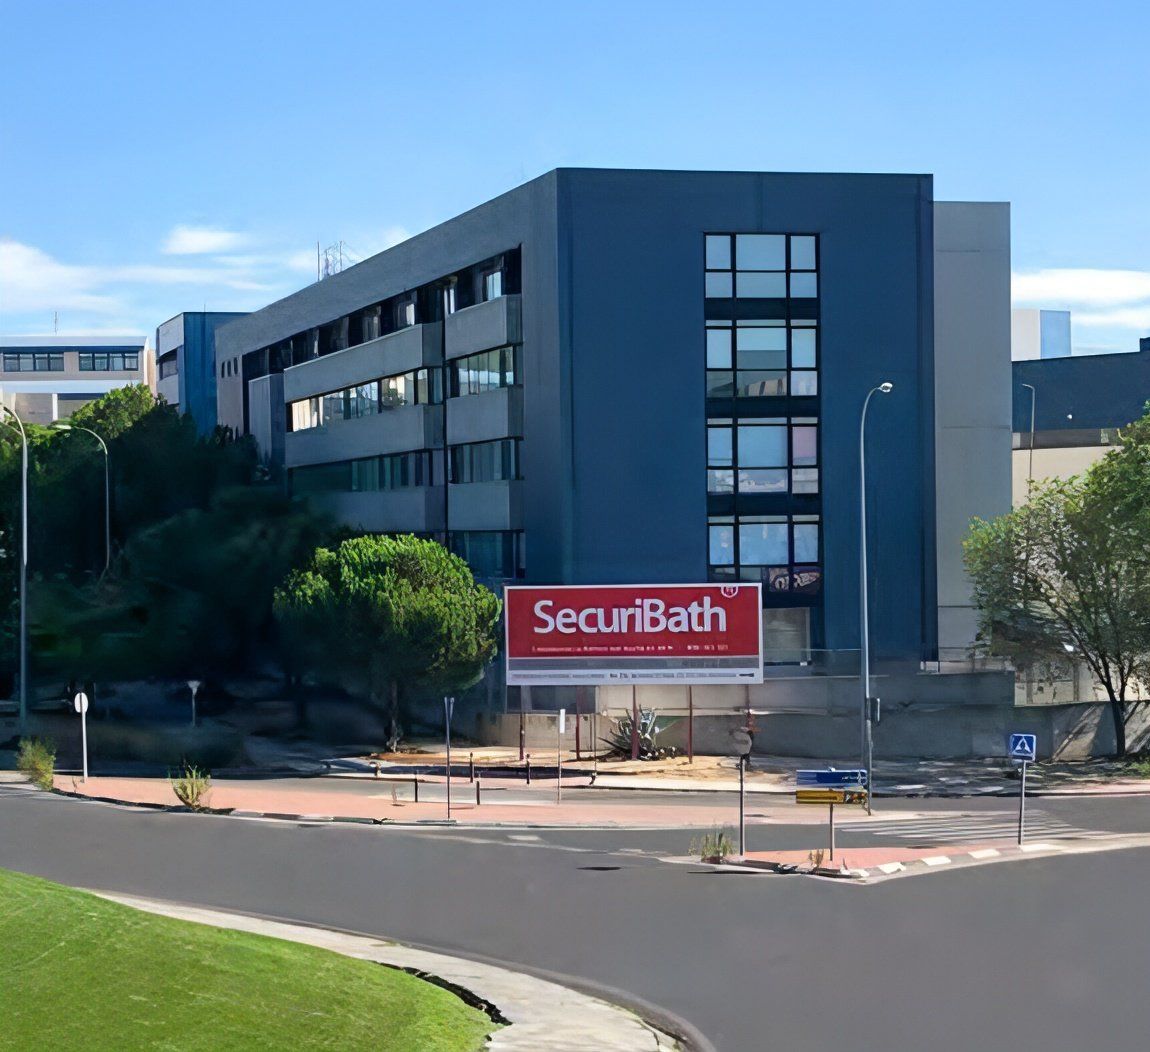 Un edificio grande con un cartel rojo que dice securbath.